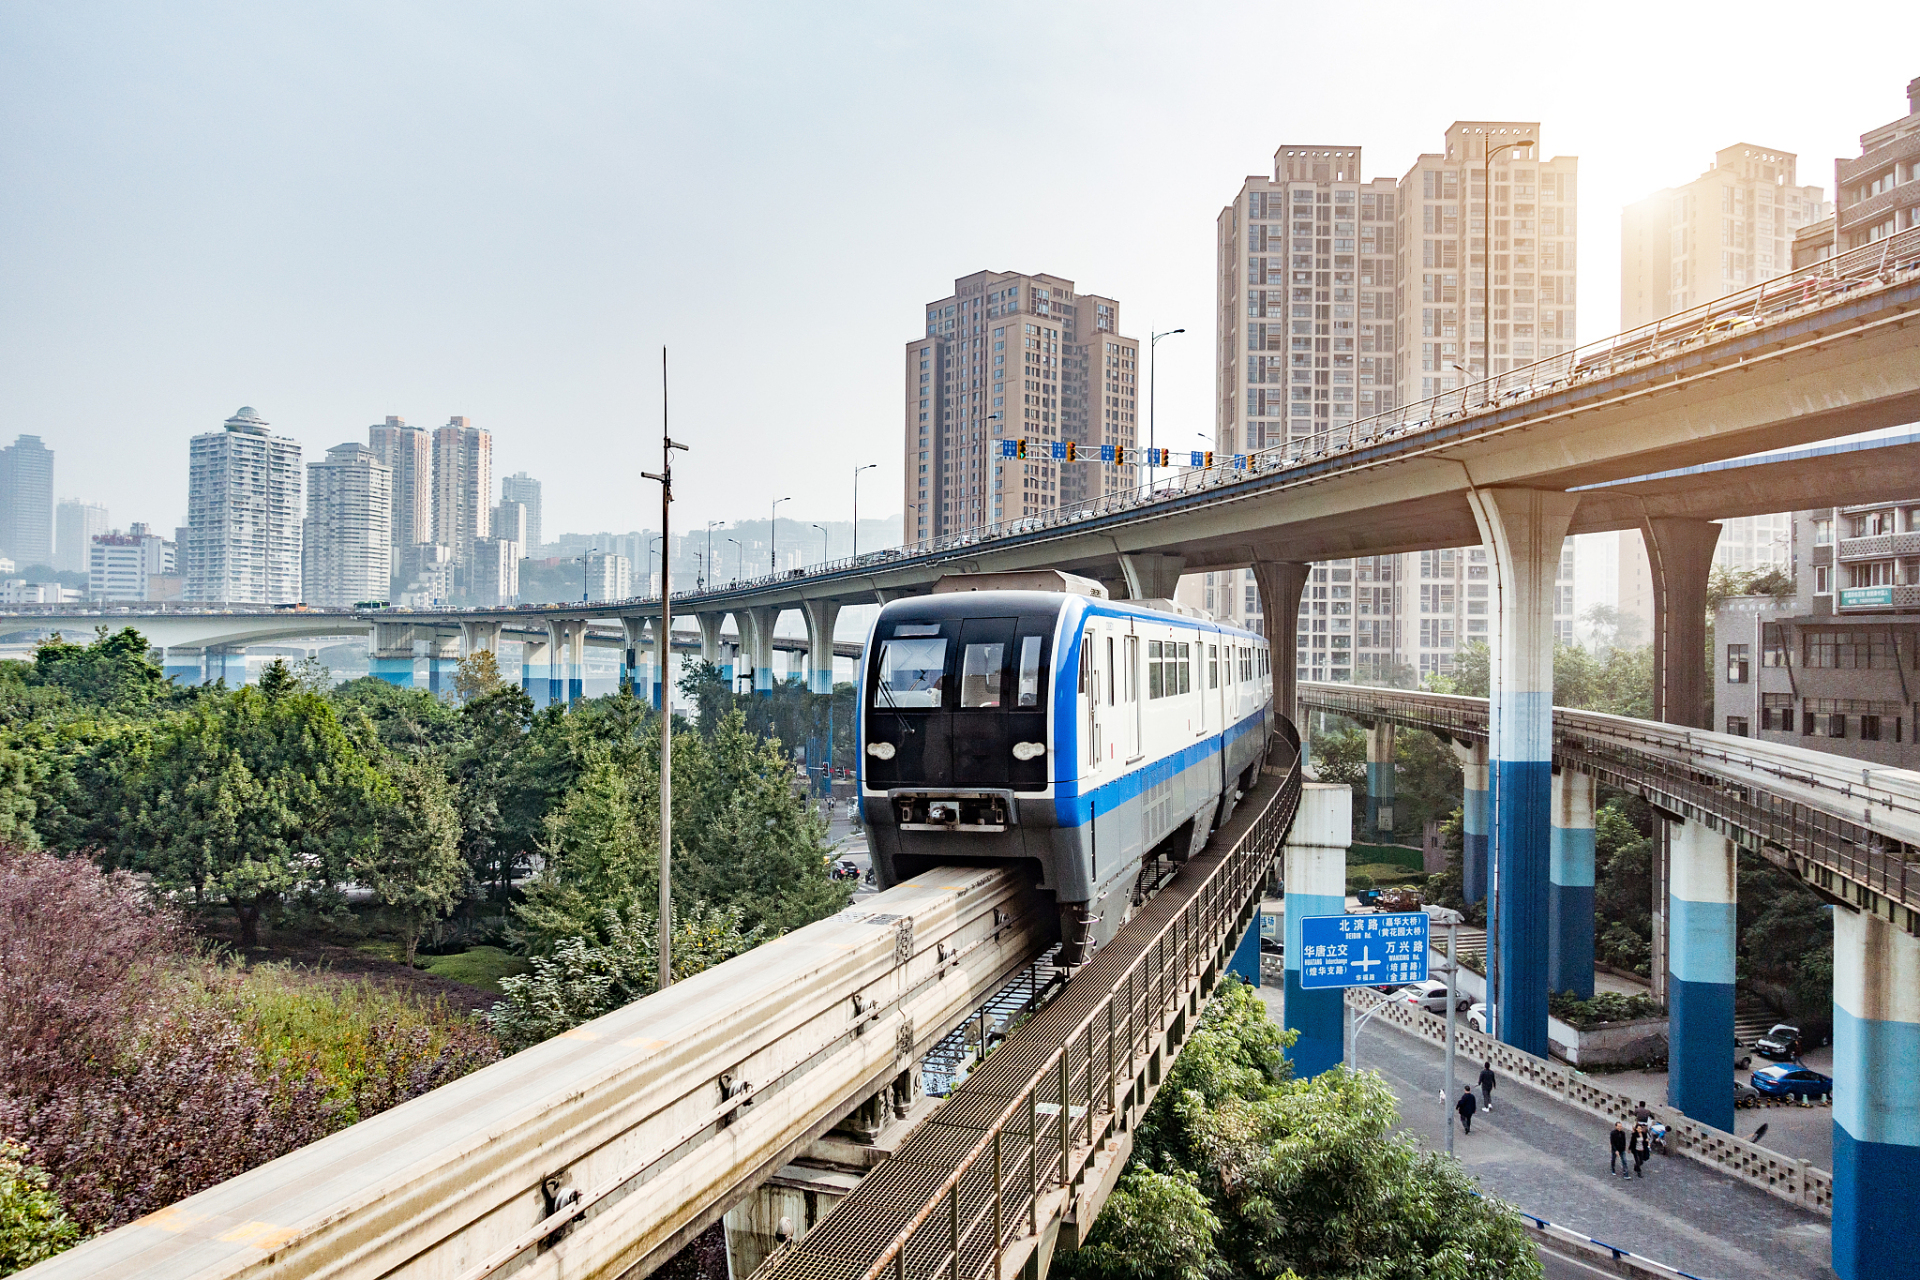 重庆南滨路有轨电车图片